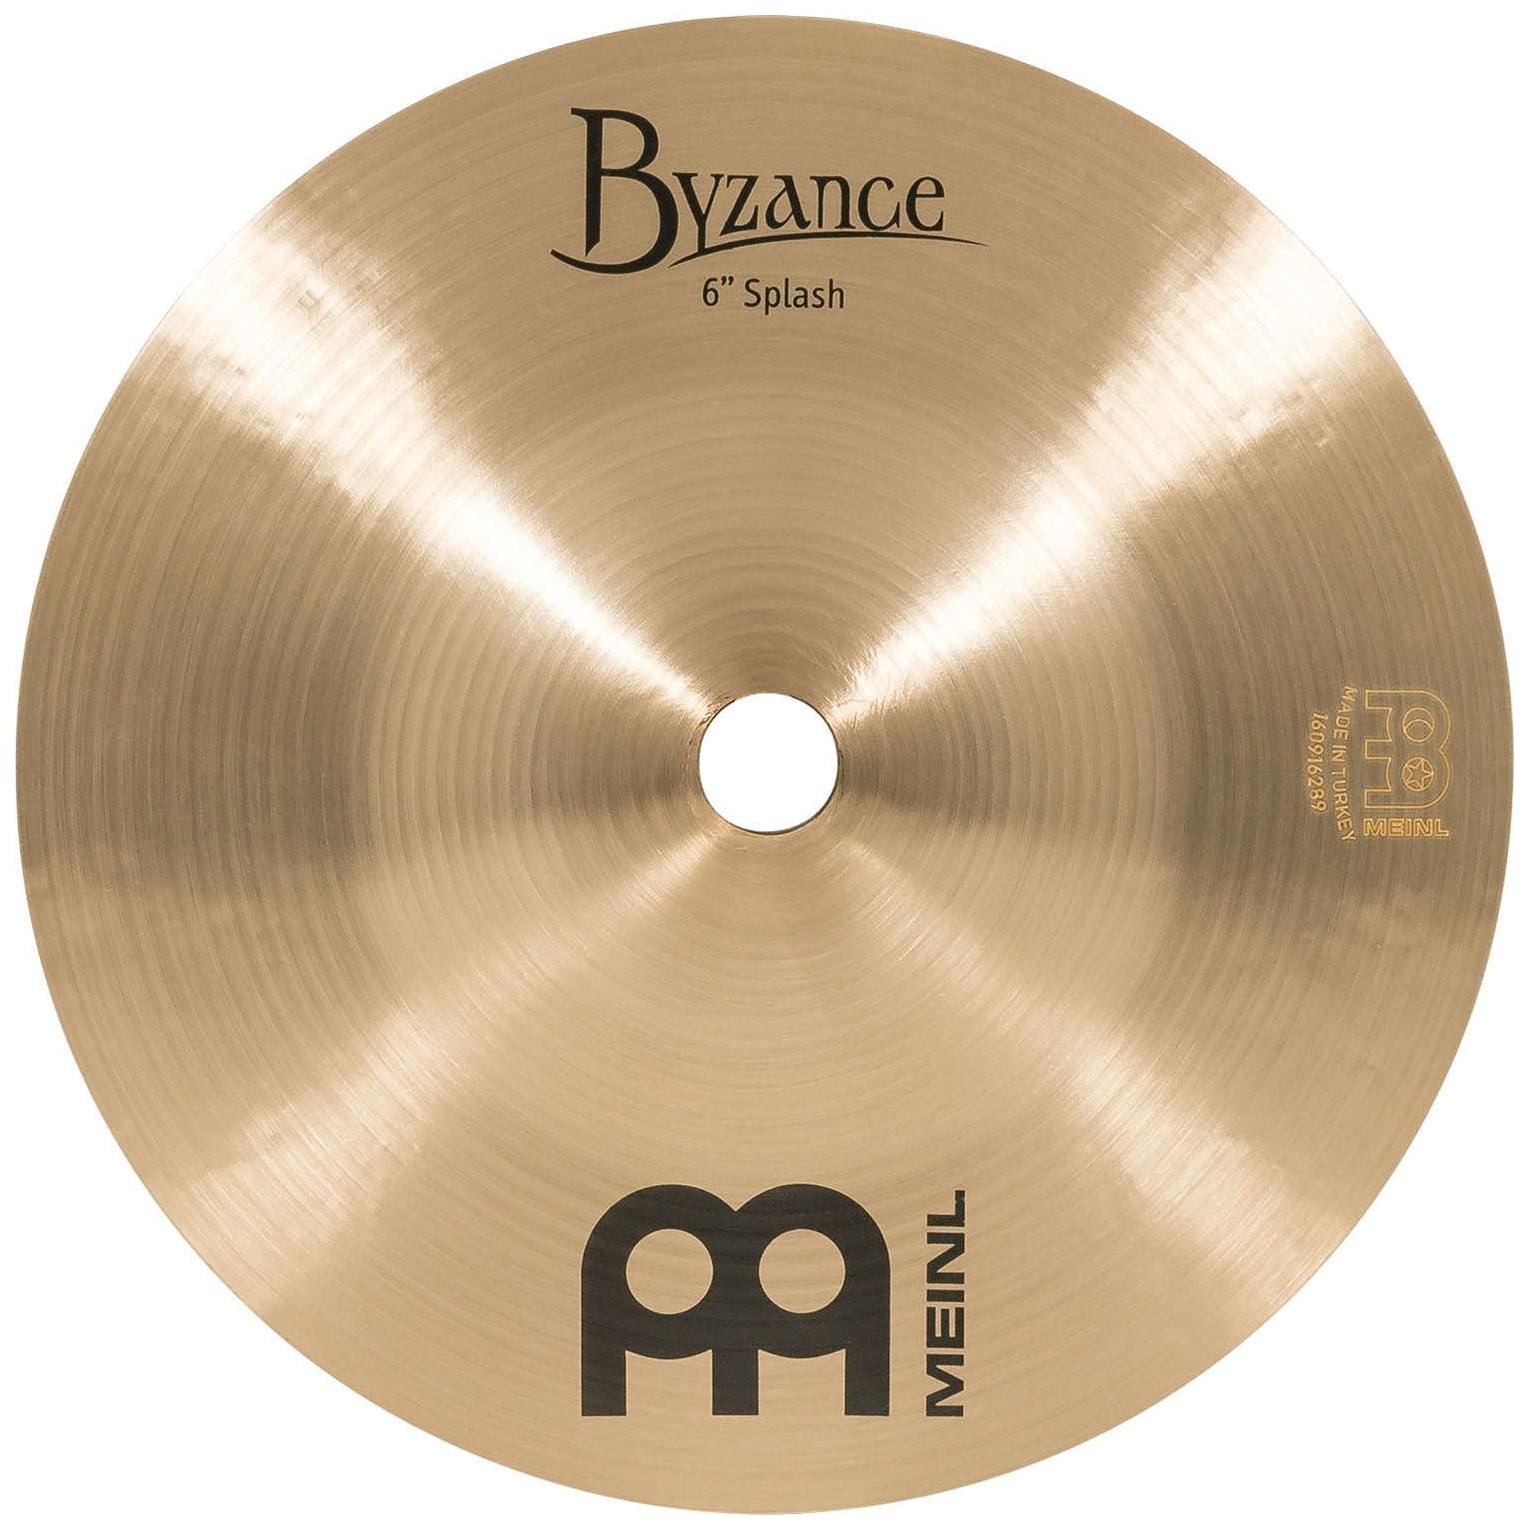 Meinl Cymbals B6S - 6" Byzance Traditional Splash 